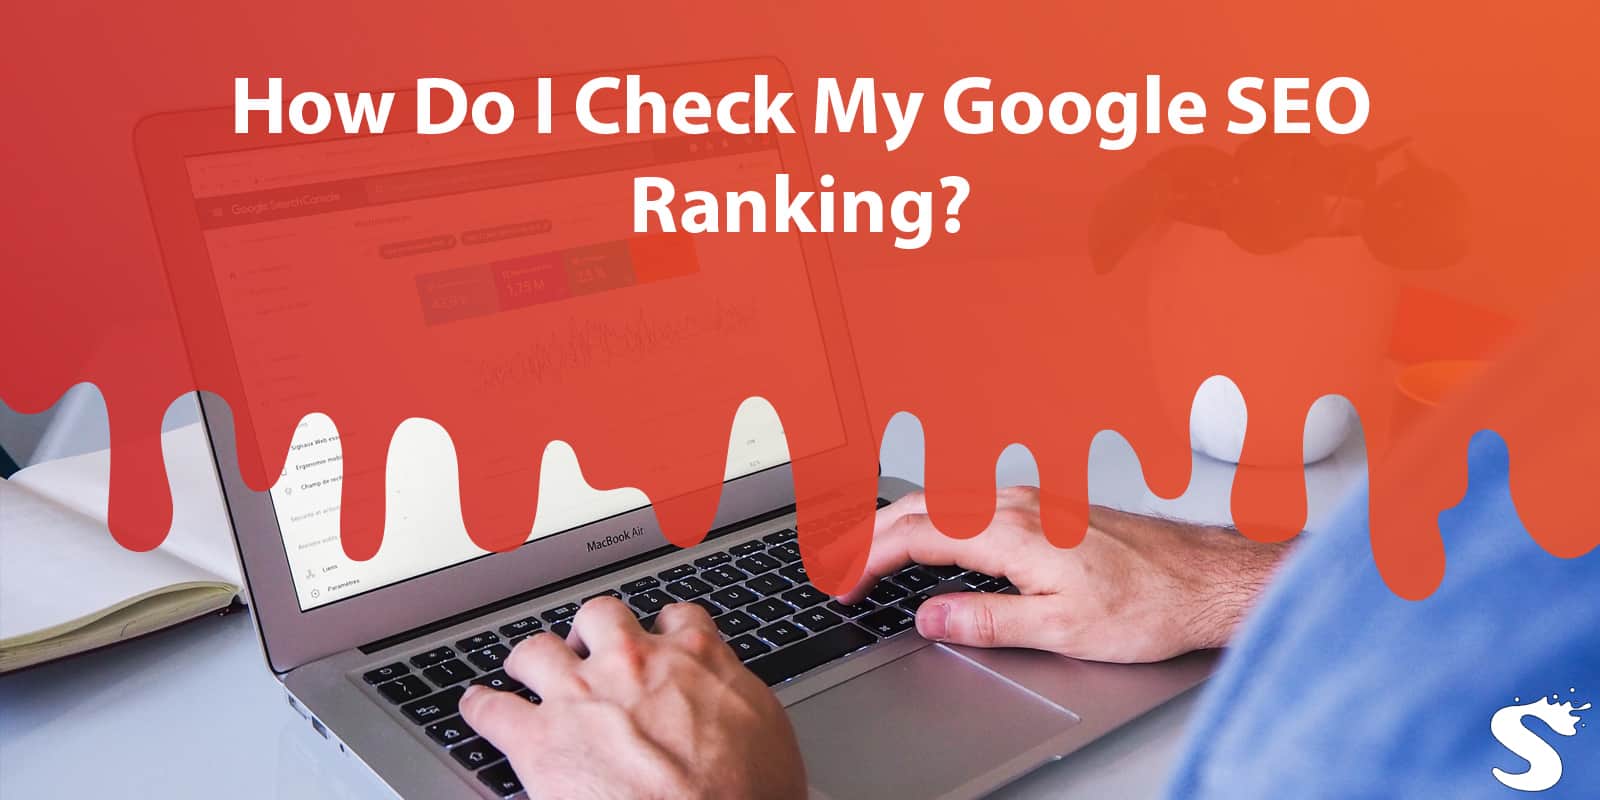 How Do I Check My Google SEO Ranking?